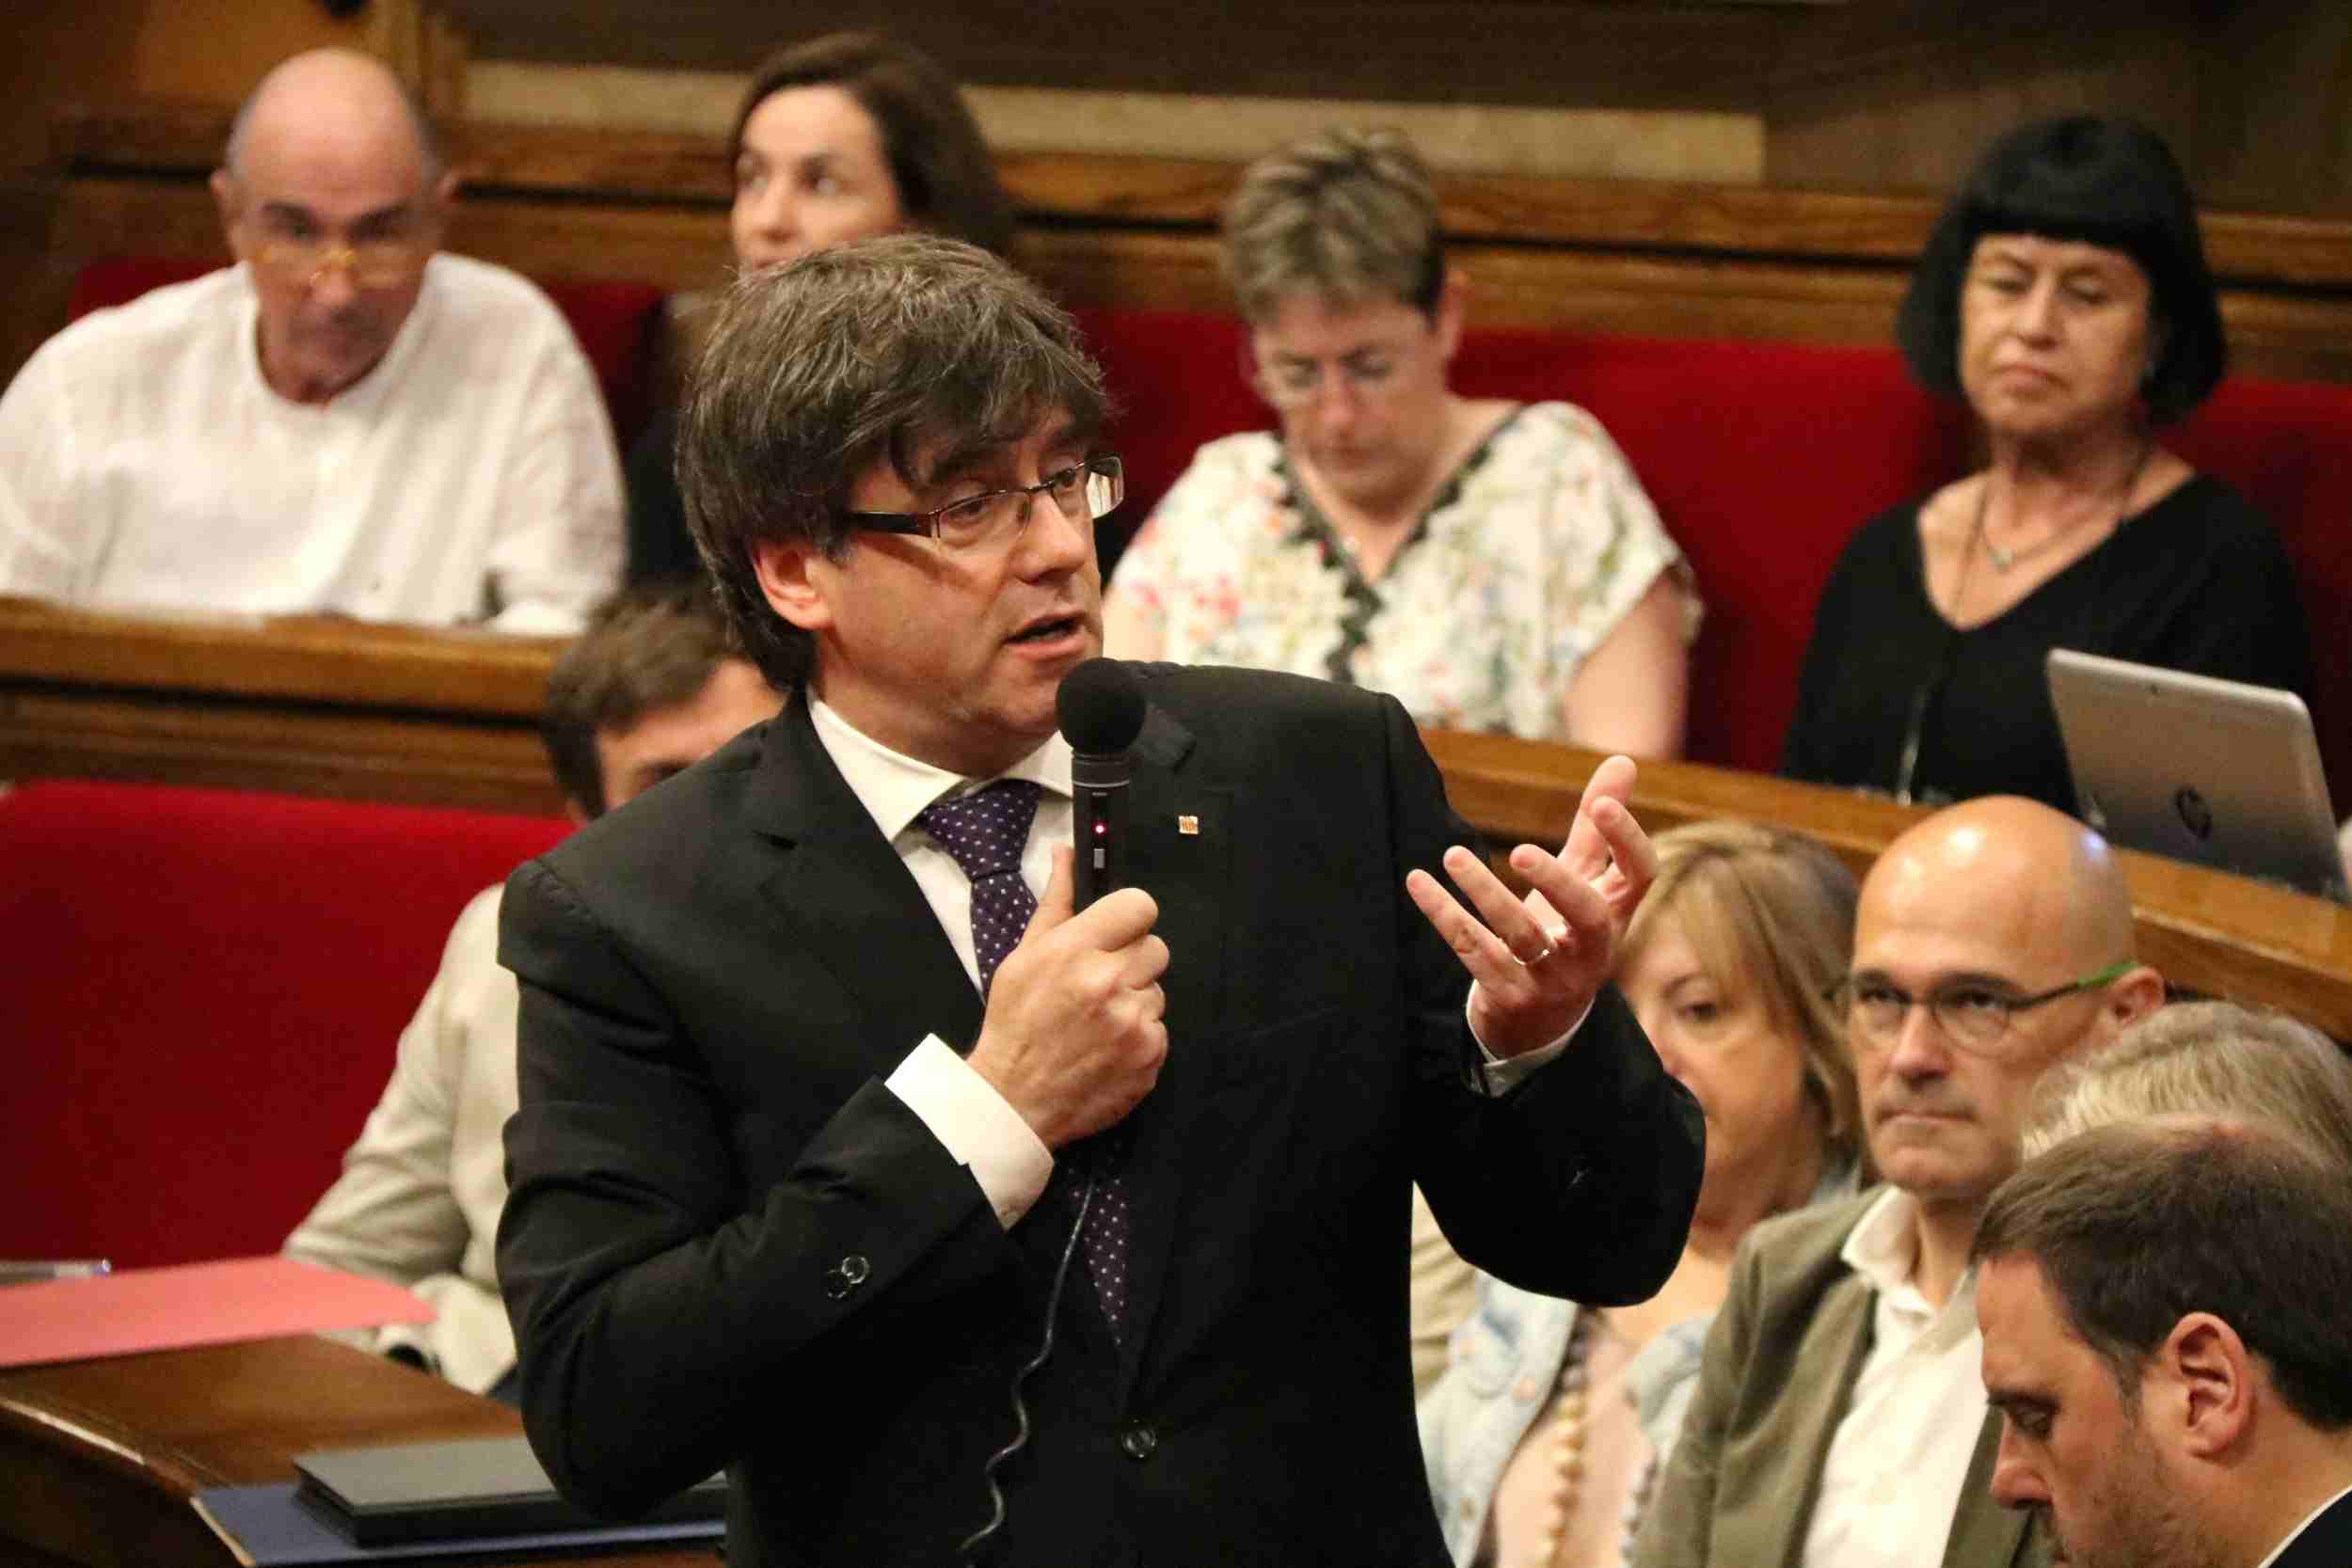 La declaració: "Constituïm la República Catalana com a Estat independent i sobirà"